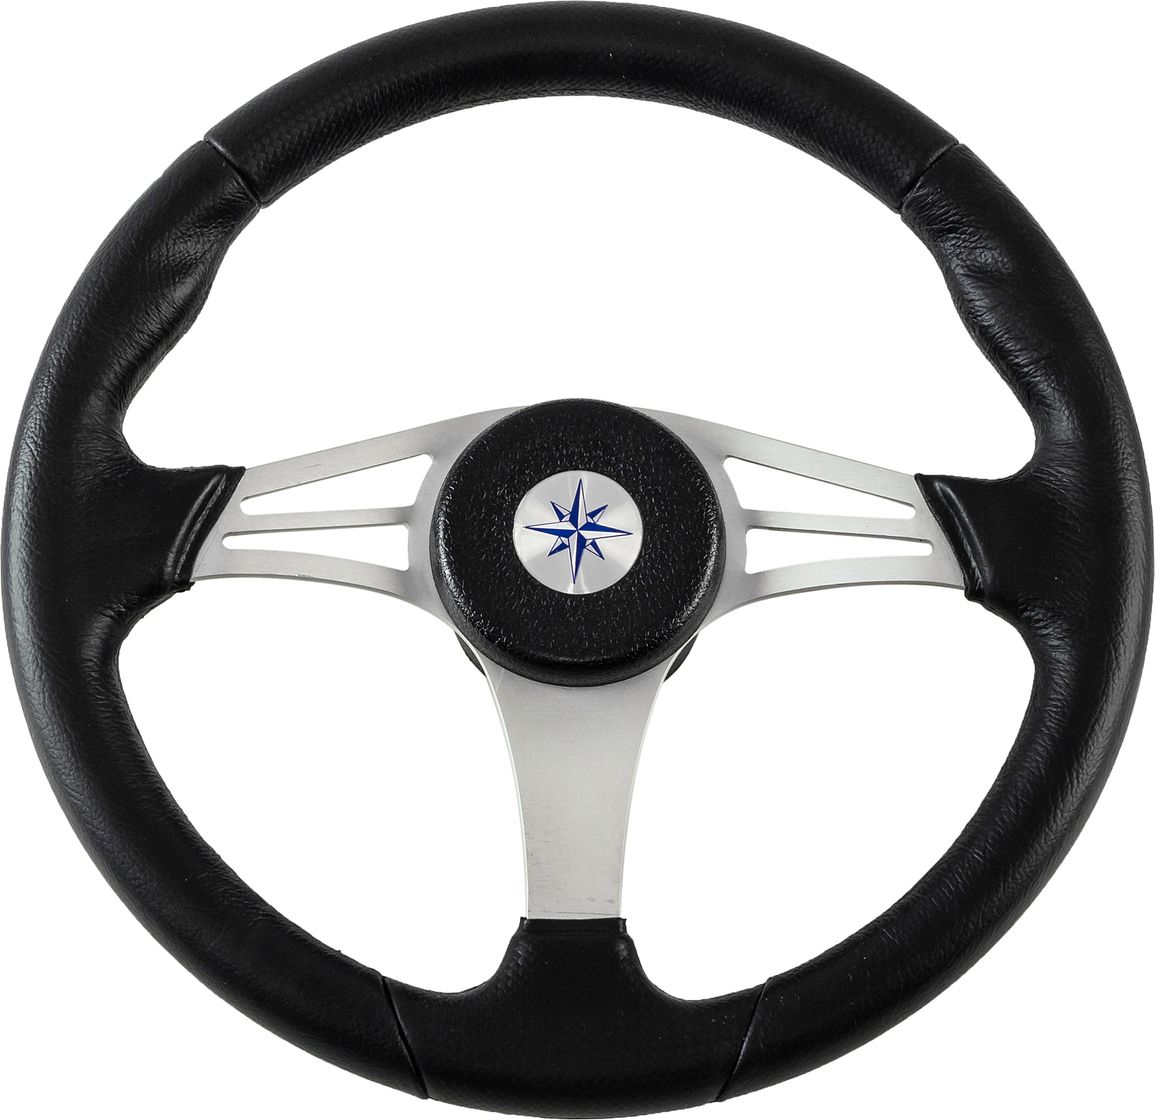 Рулевое колесо ENDURANCE обод черный, спицы серебряные д. 350 мм VN13511-01 рулевое колесо orion обод спицы серебряные д 340 мм vn934122 01